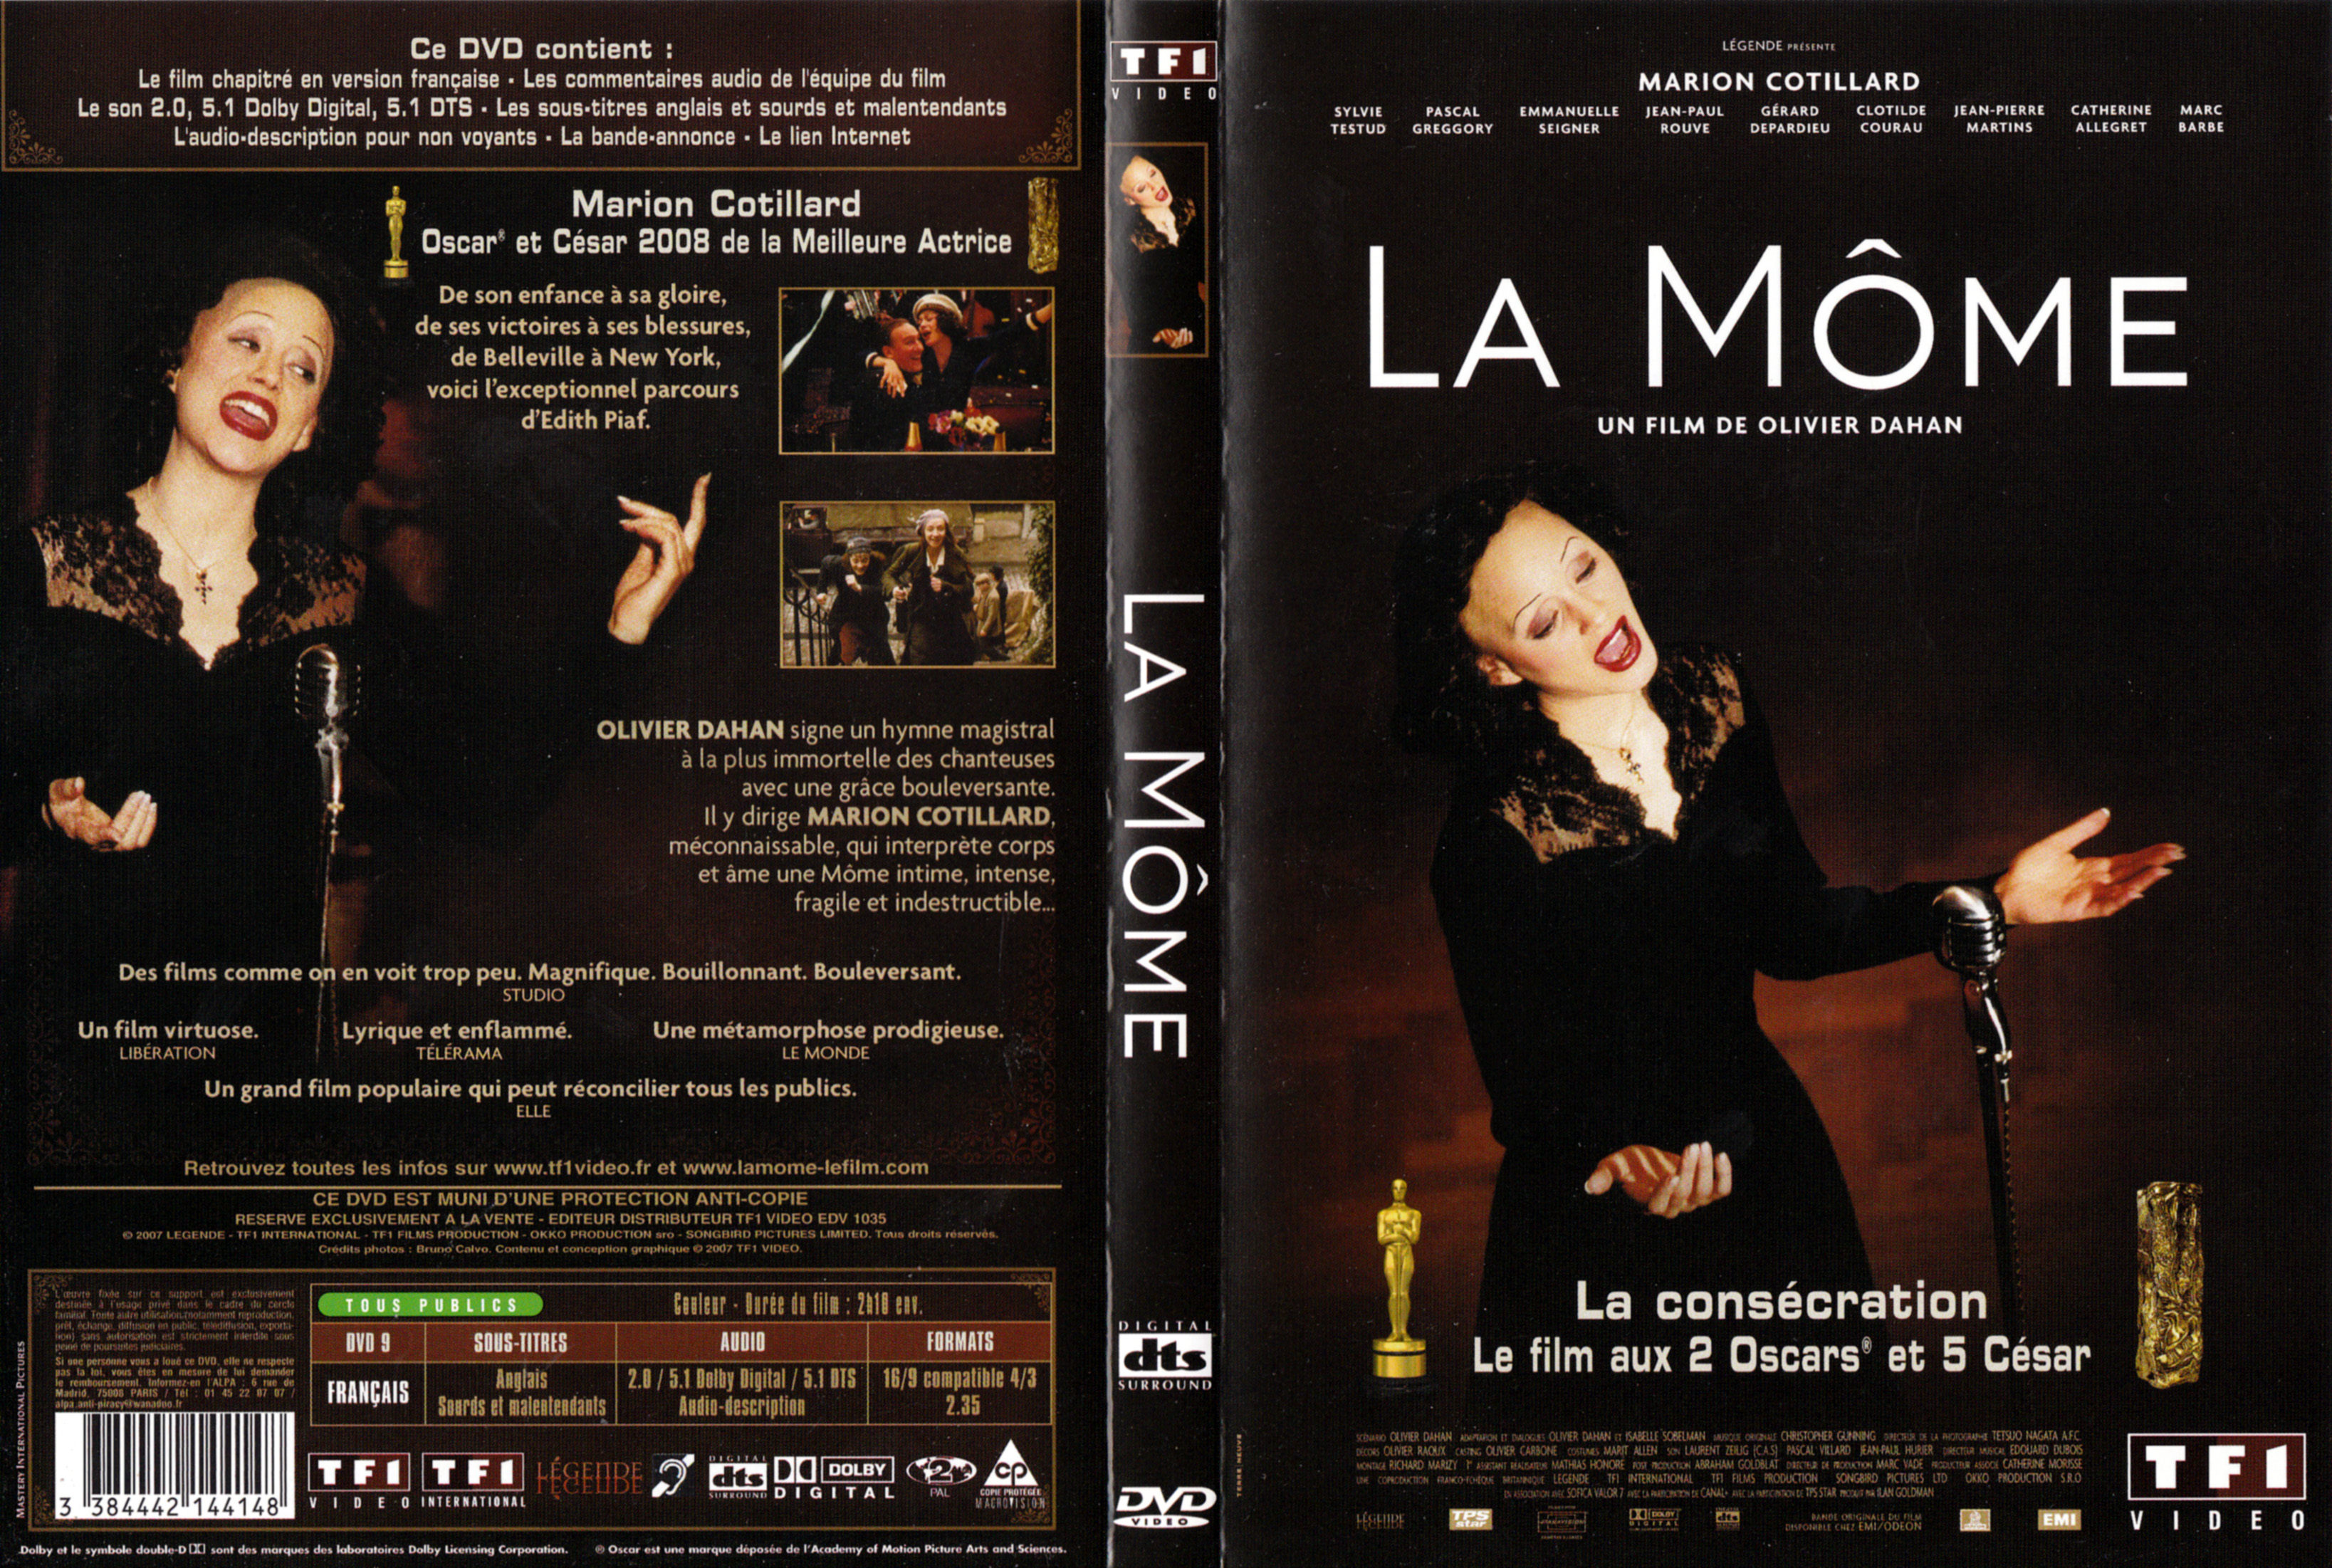 Jaquette DVD La mome v3